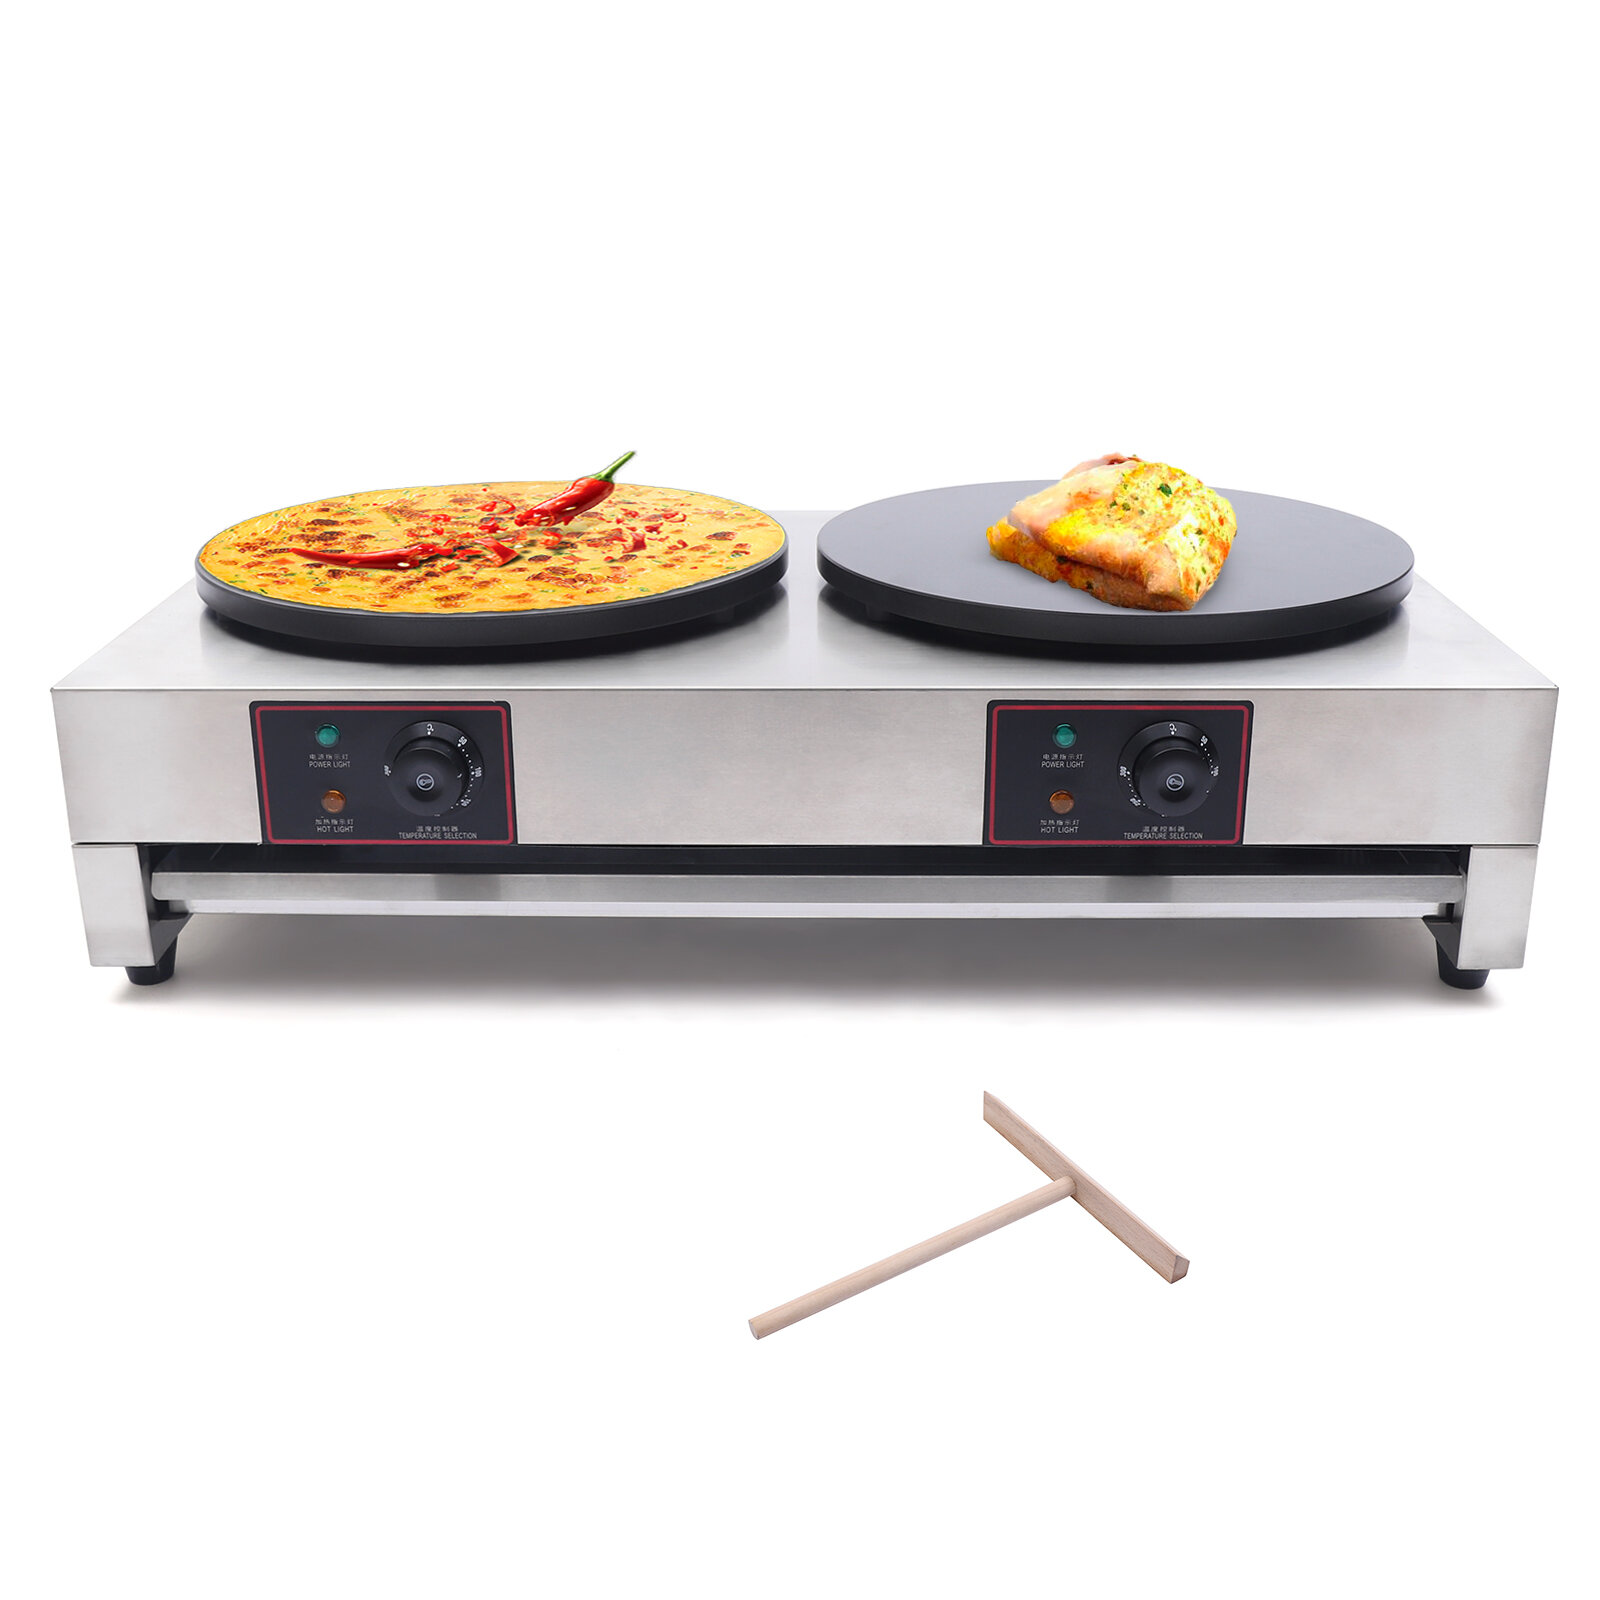 https://assets.wfcdn.com/im/96395434/compr-r85/1852/185208677/stainless-steel-dual-heating-plate-nonstick-pancake-maker.jpg